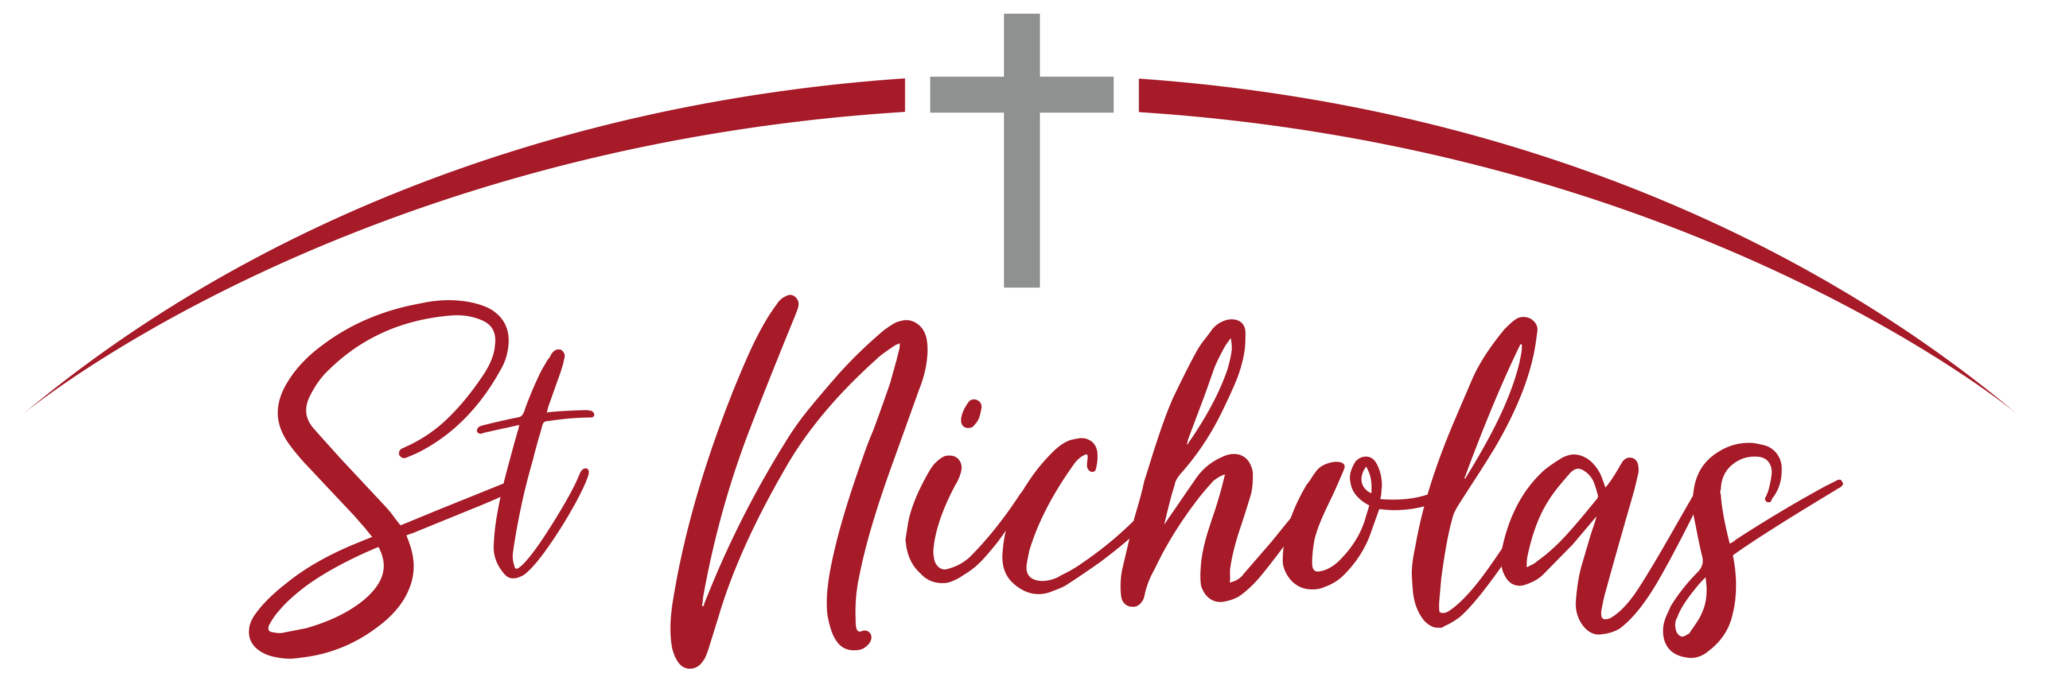 St Nicholas Church Orpington